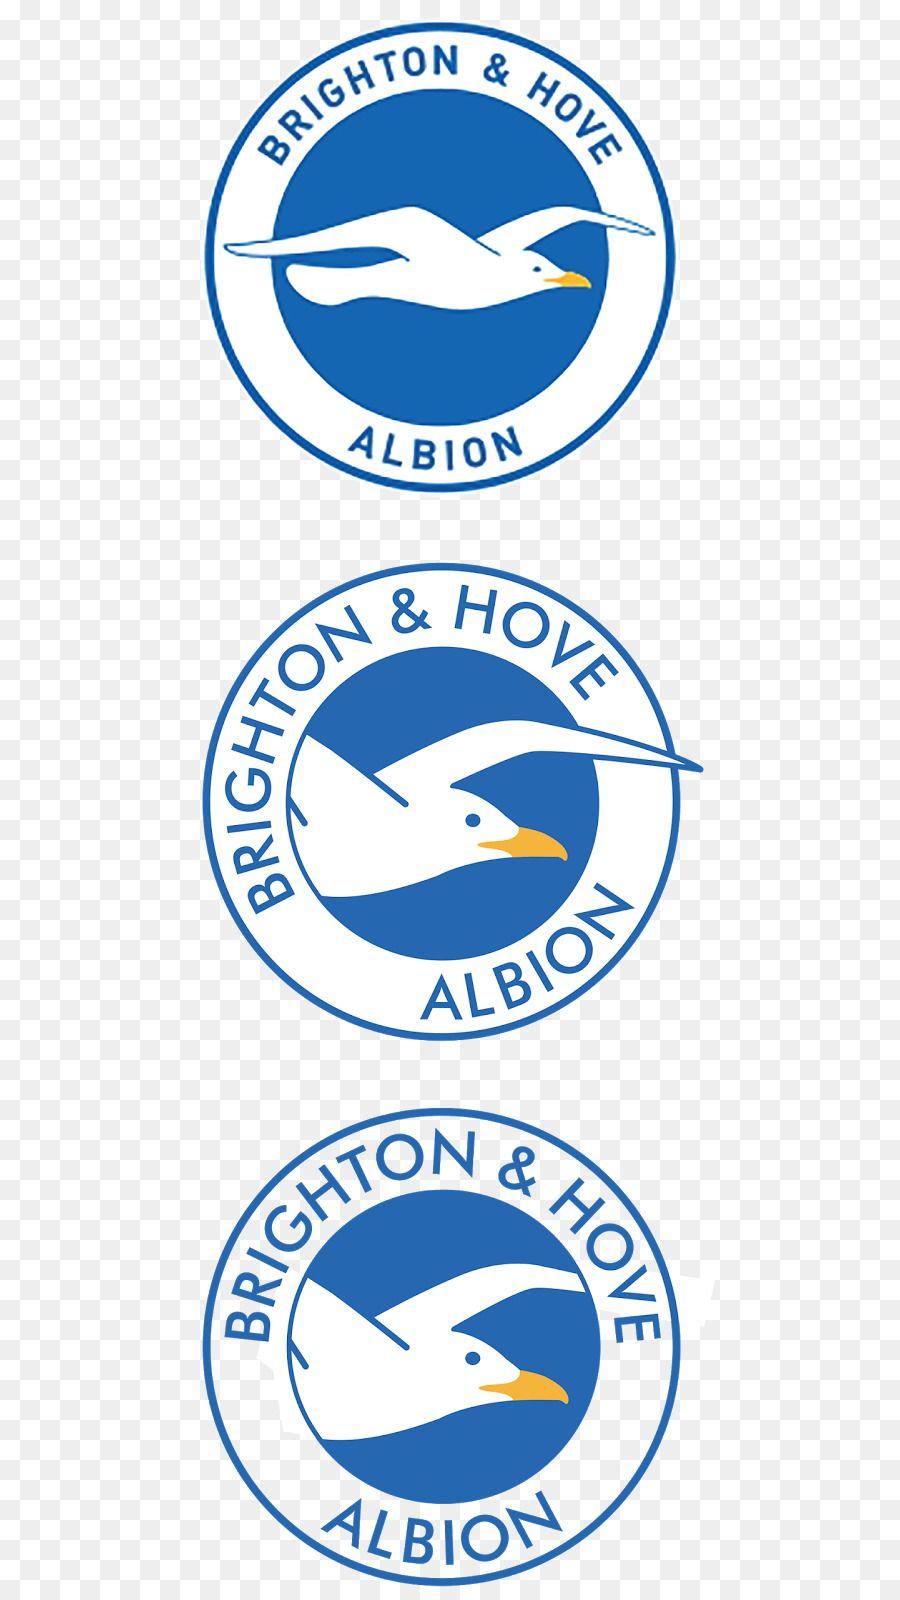 Brighton and Hove Albion Logo - Brighton & Hove Albion F.C. Logo Trademark Brand - hole in the wall ...